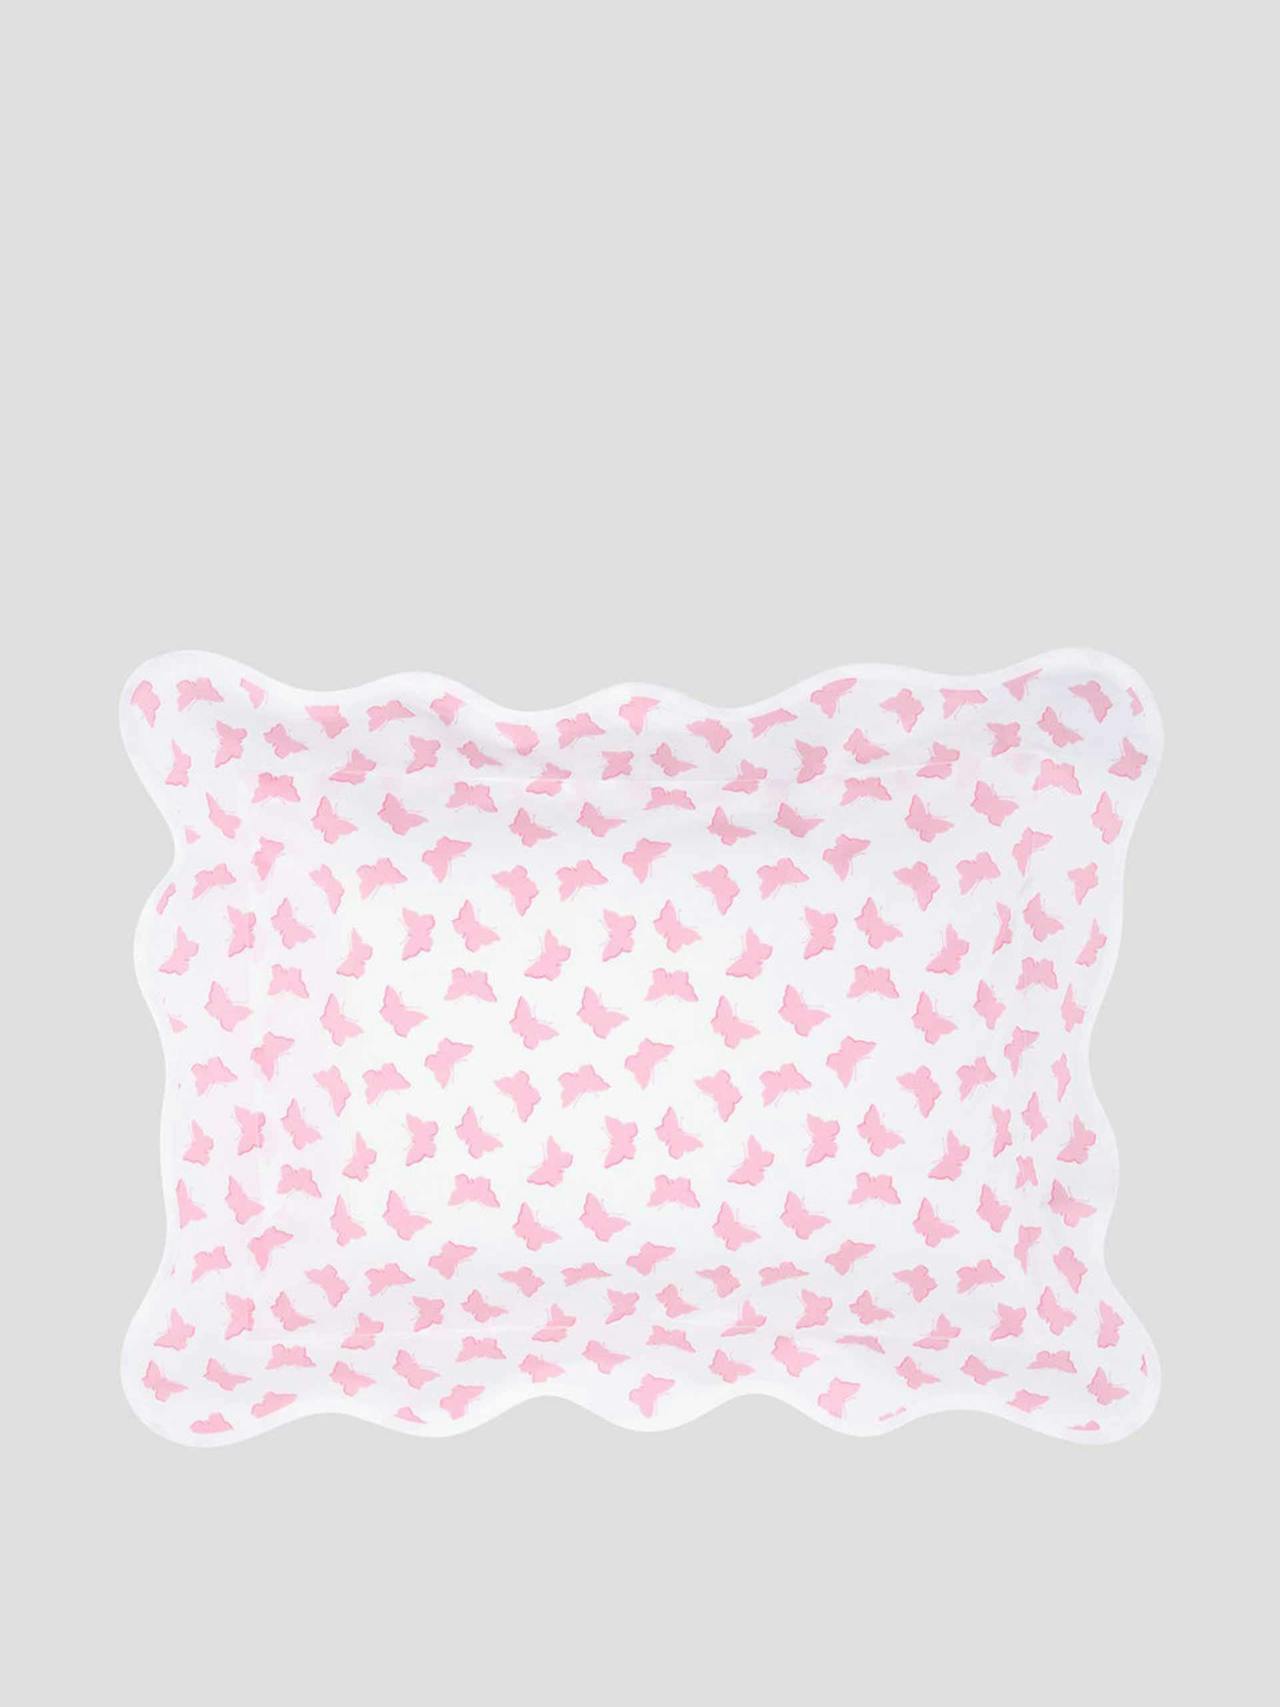 Pink butterflies scalloped baby pillowcase